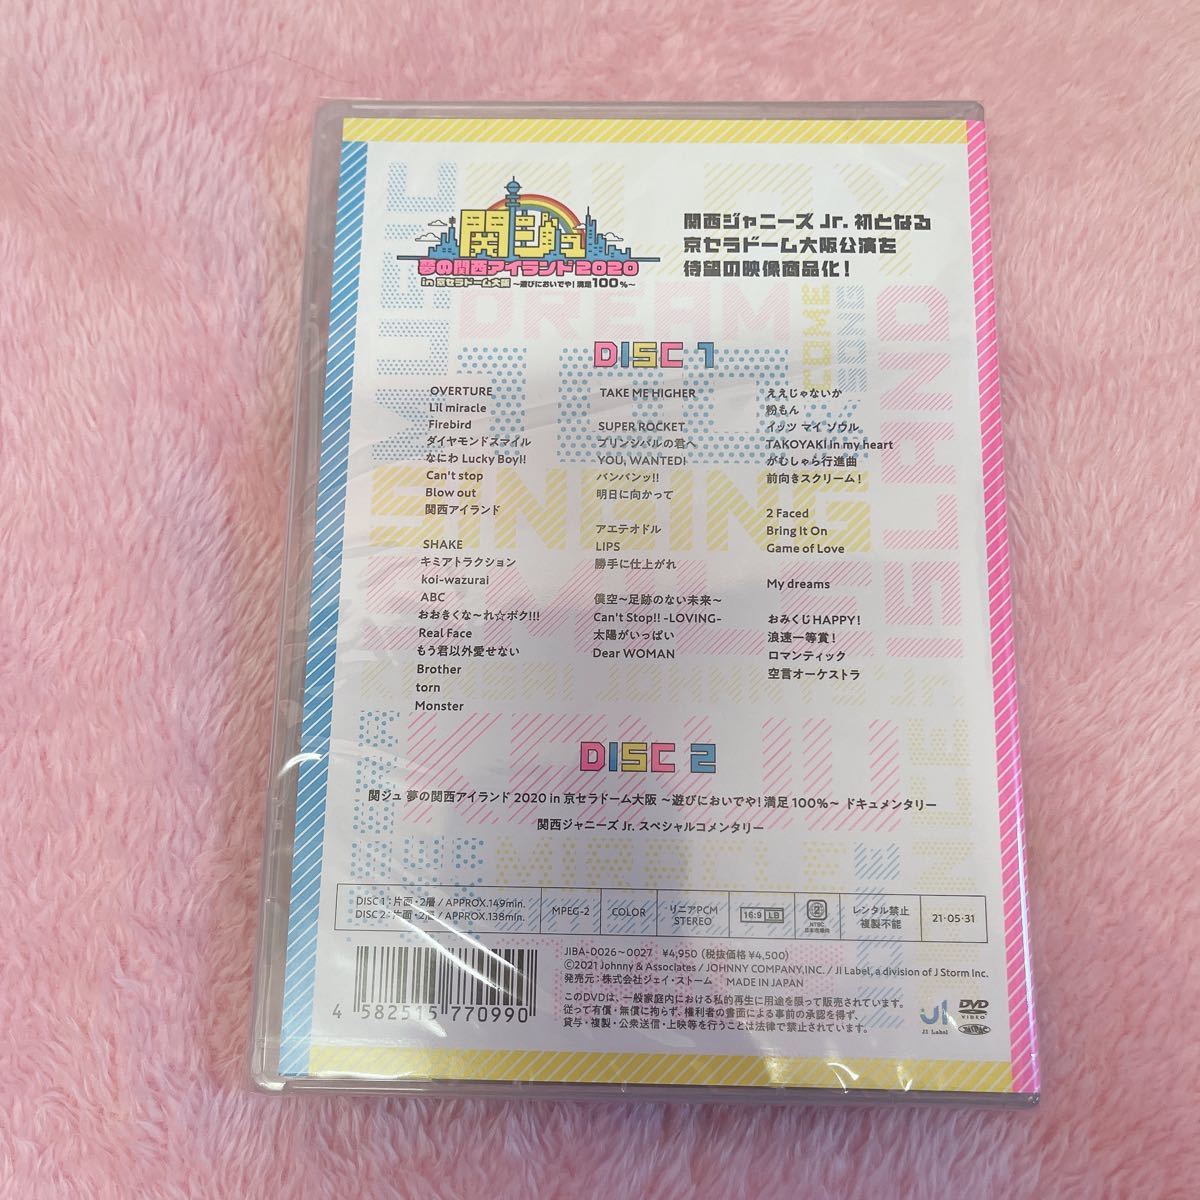 エンタメ Johnny's 京セラドーム DVD 新品未開封の通販 by yu's shop